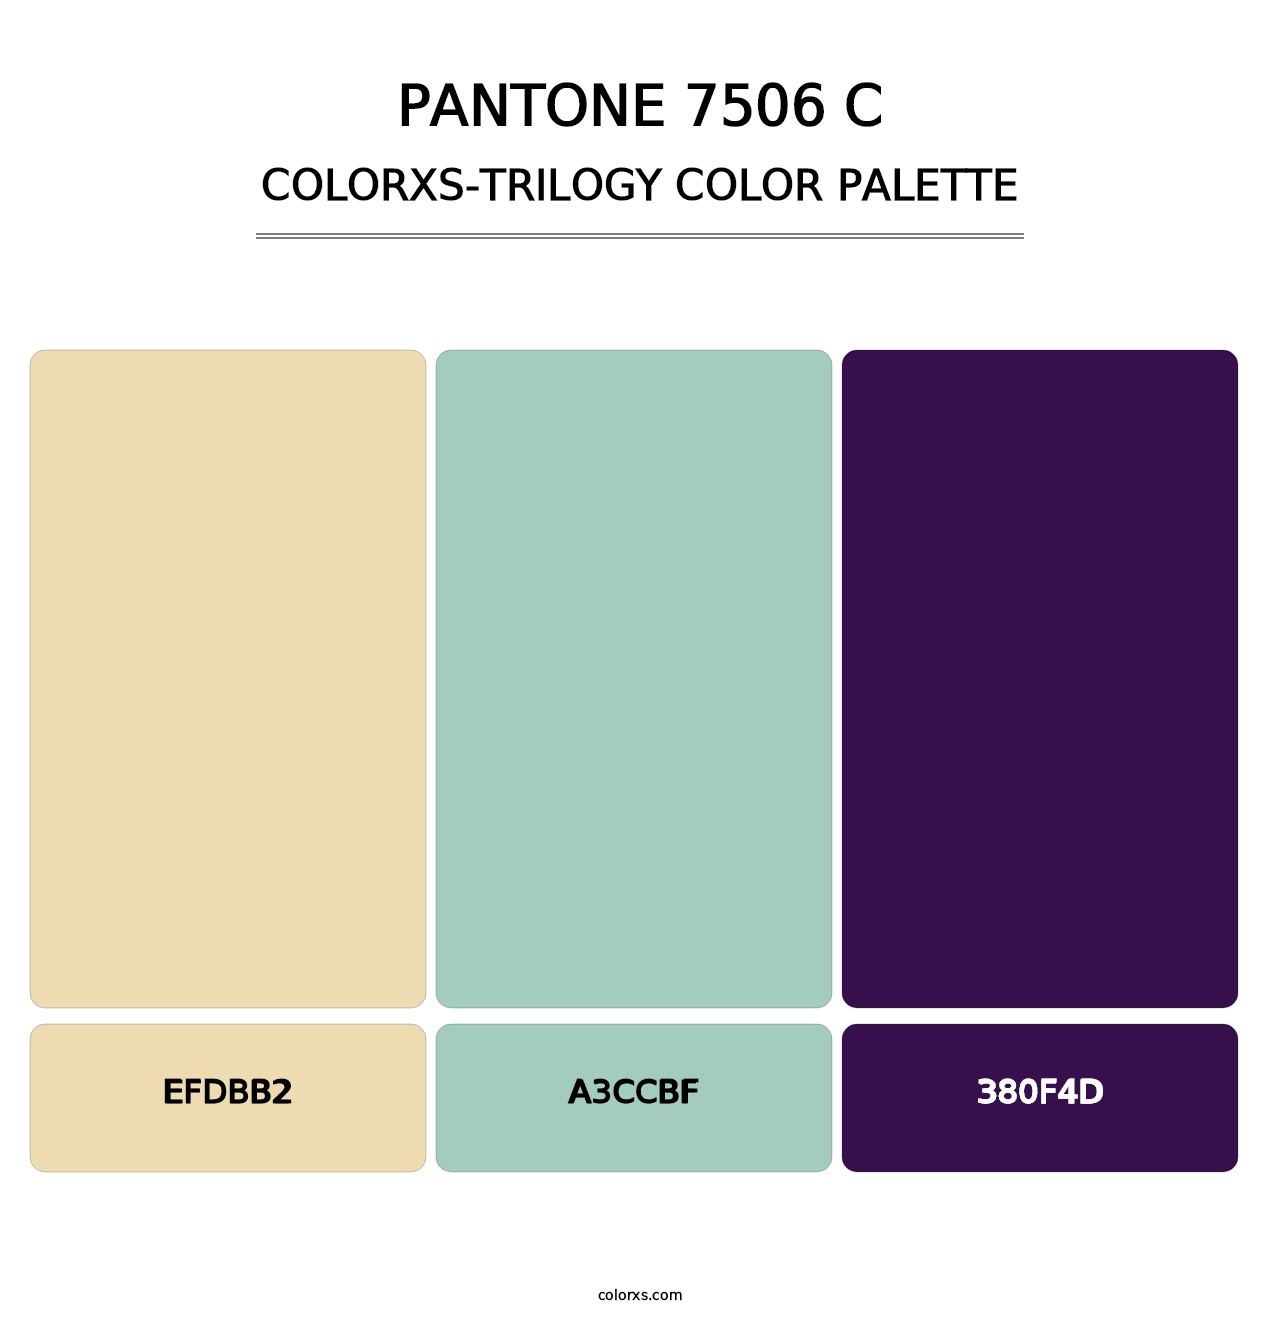 PANTONE 7506 C - Colorxs Trilogy Palette